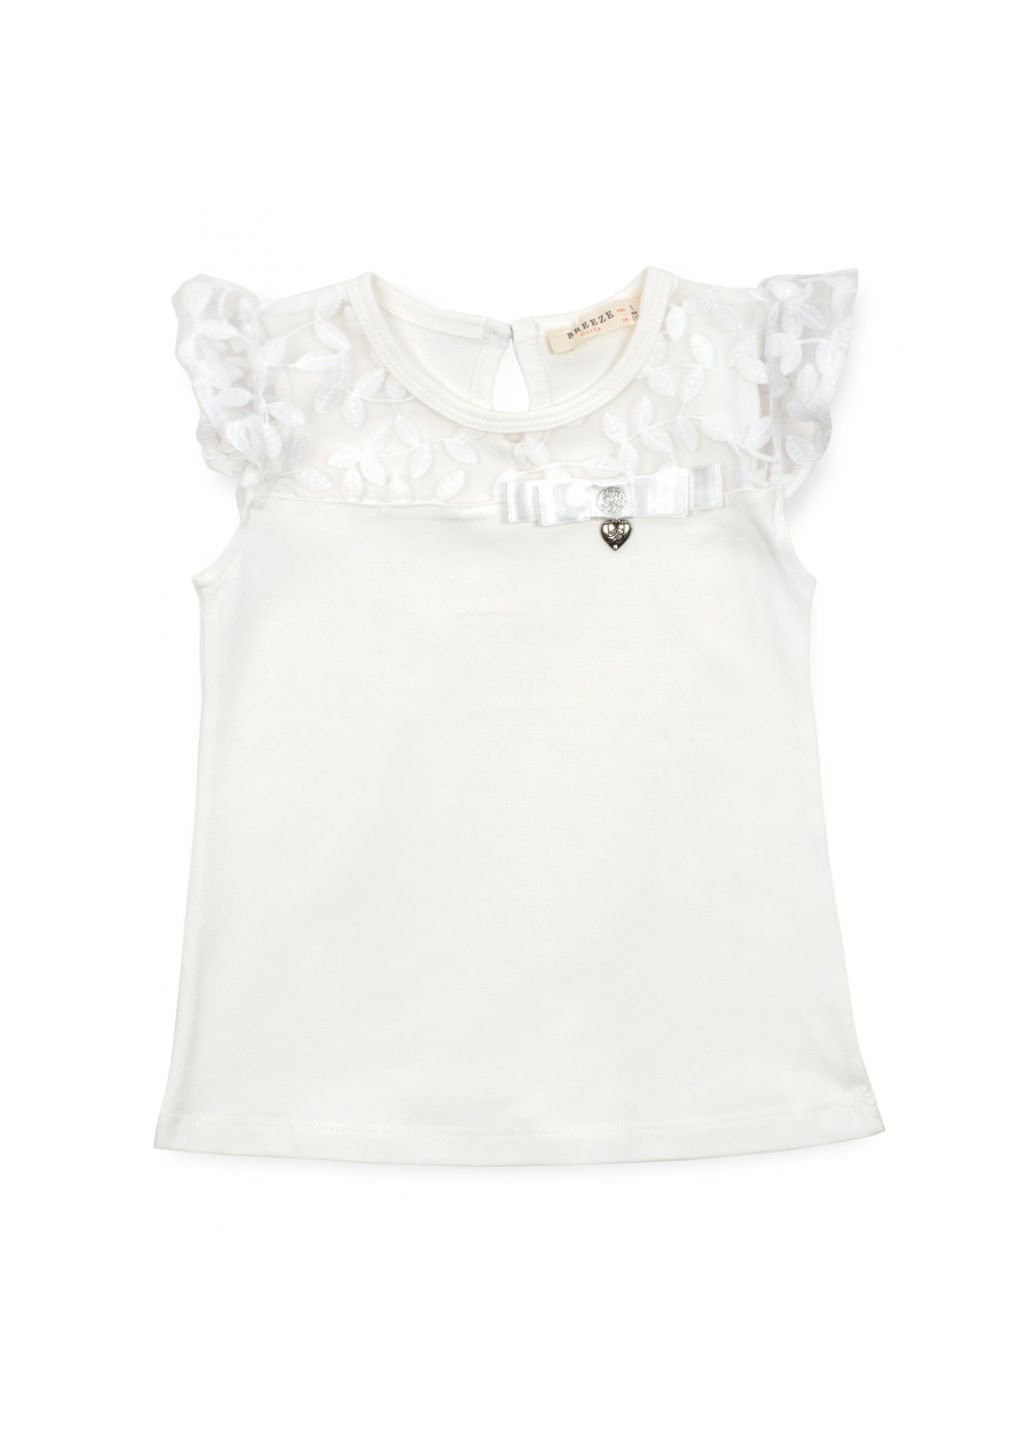 Белая летняя футболка детская с кружевом (12904-110g-cream) Breeze